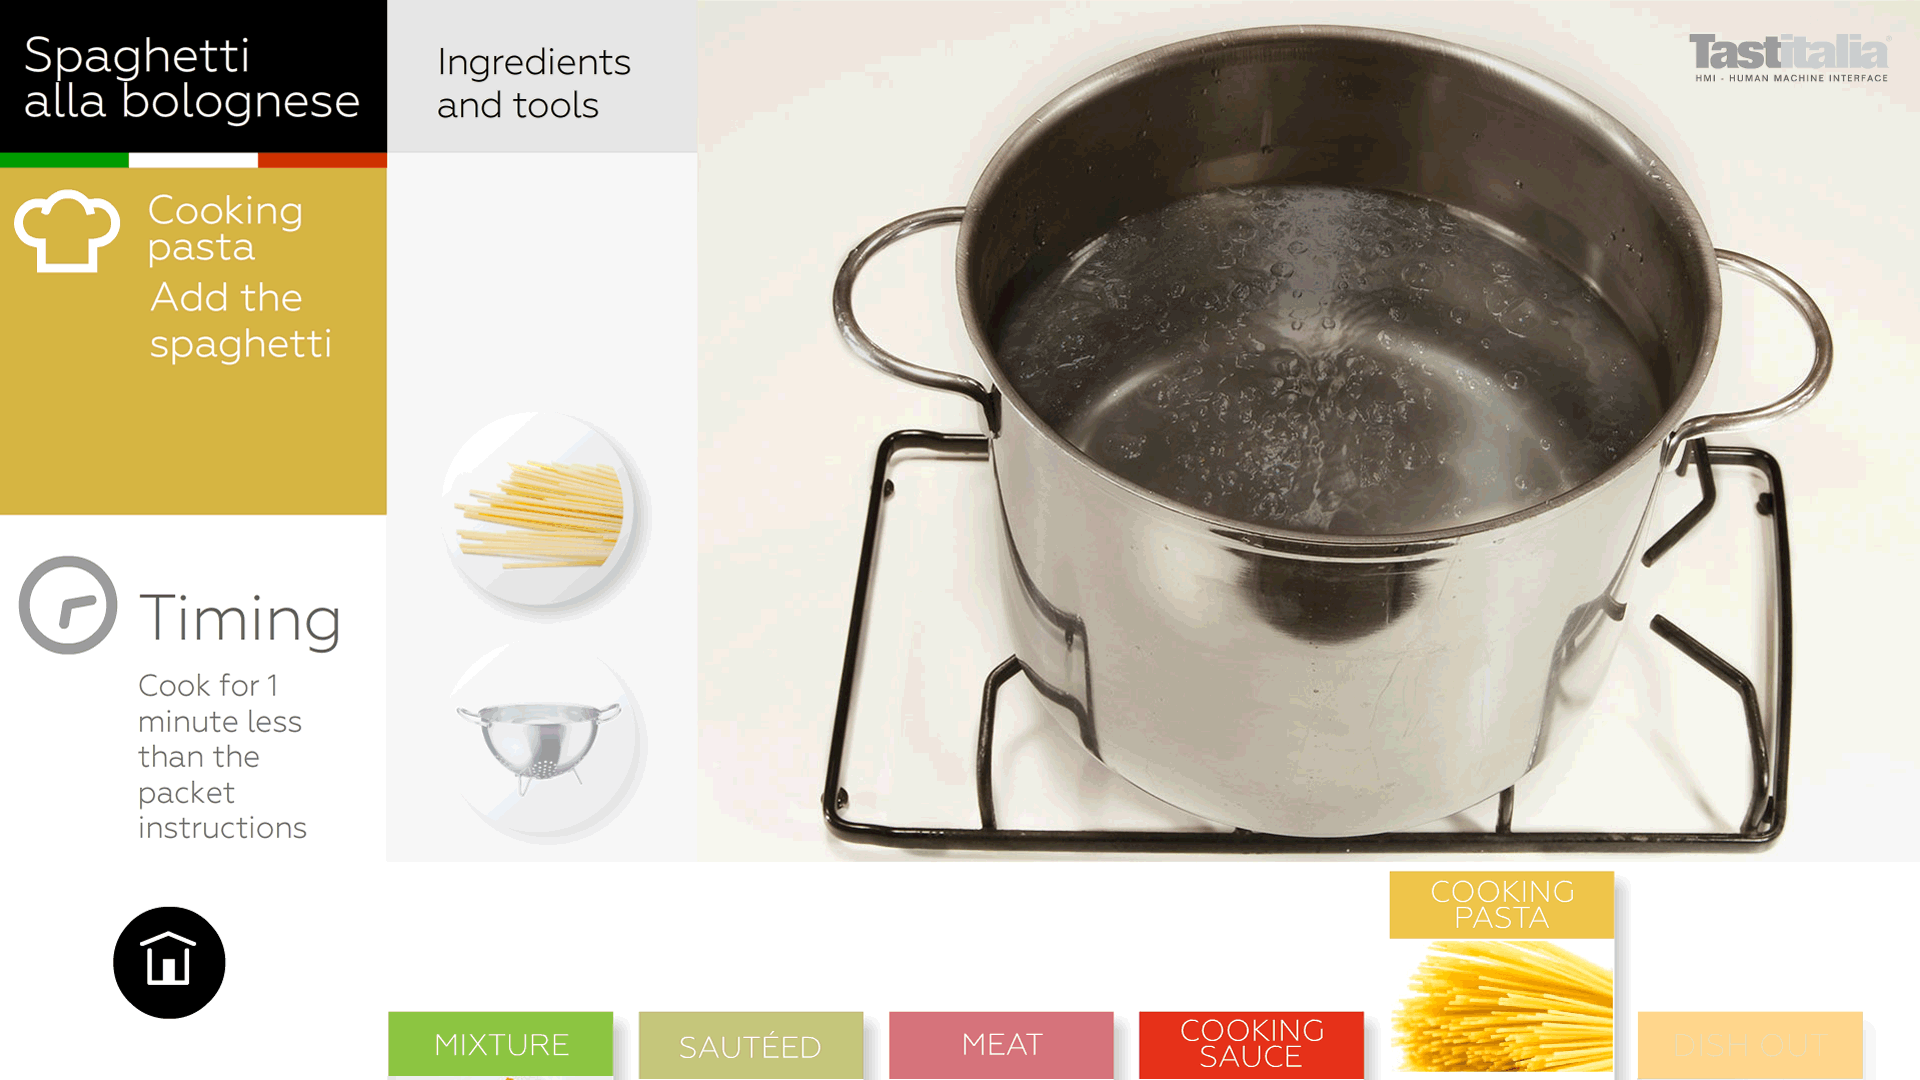 Spaghetti alla bolognese - Step 5: Pasta